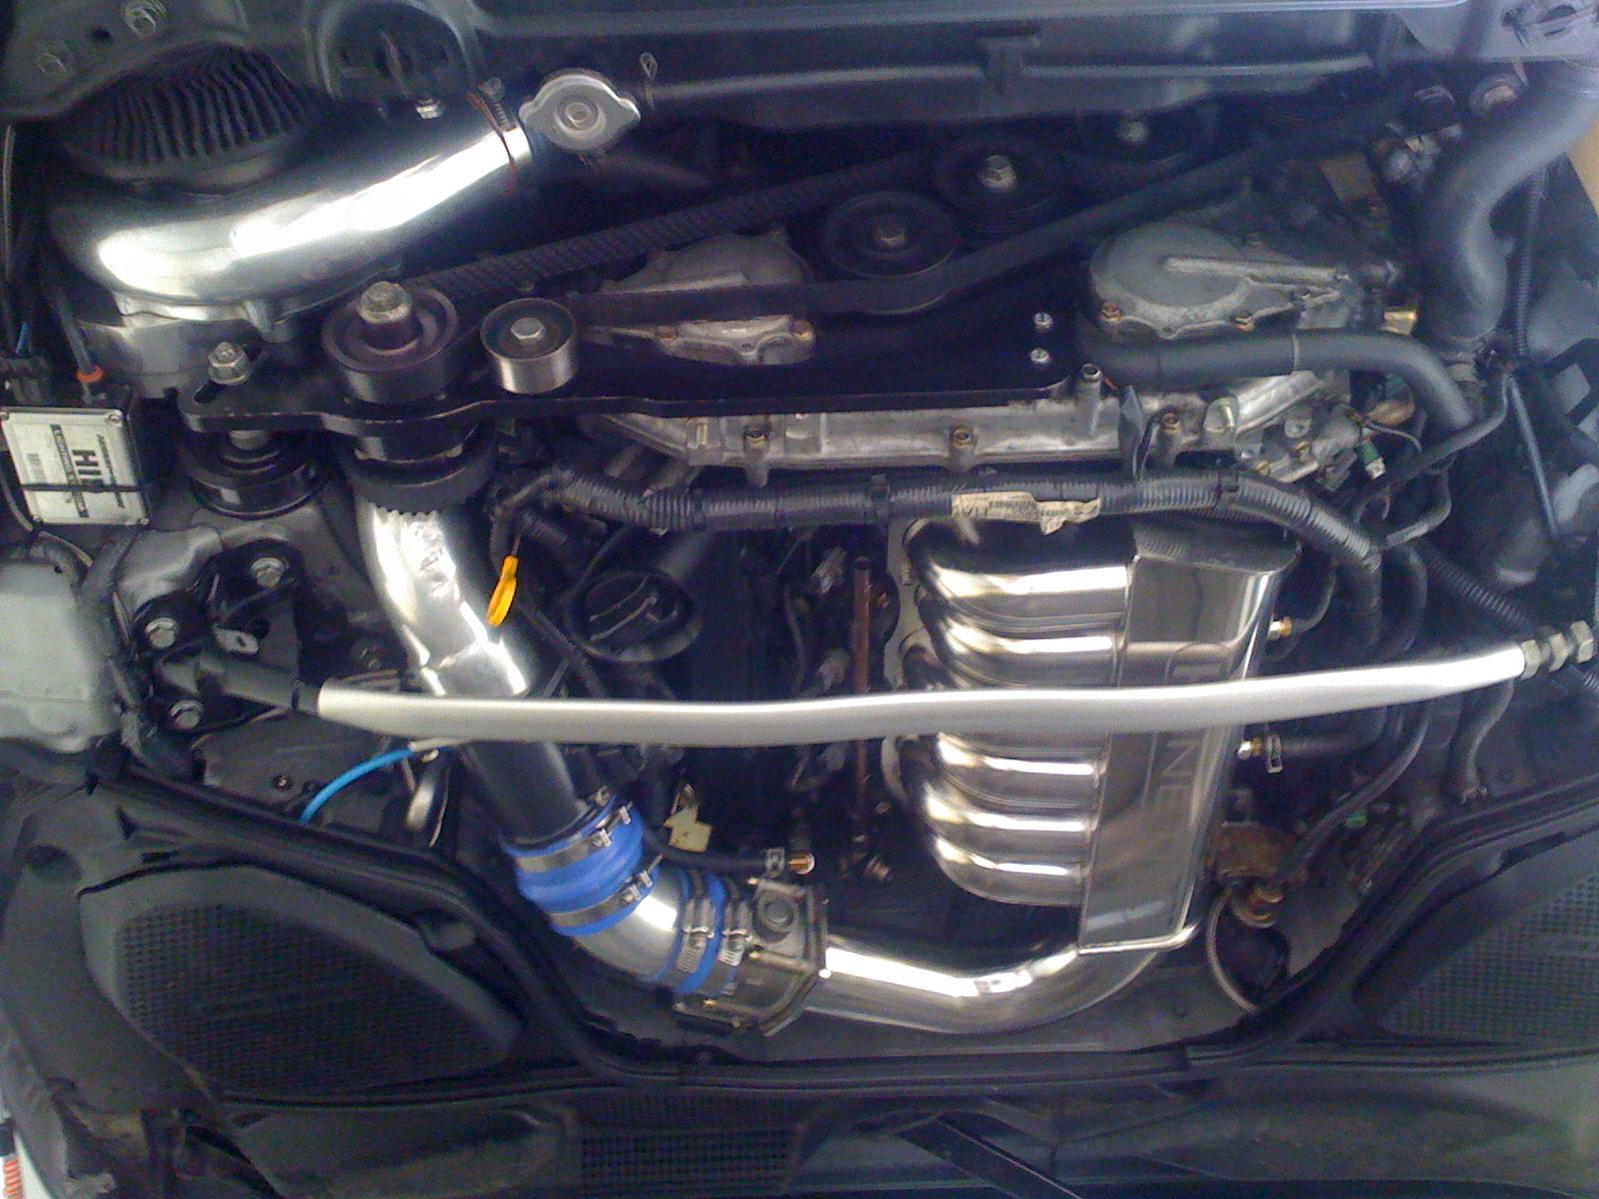 Vortech Supercharger + 50 hp Nitrous shot